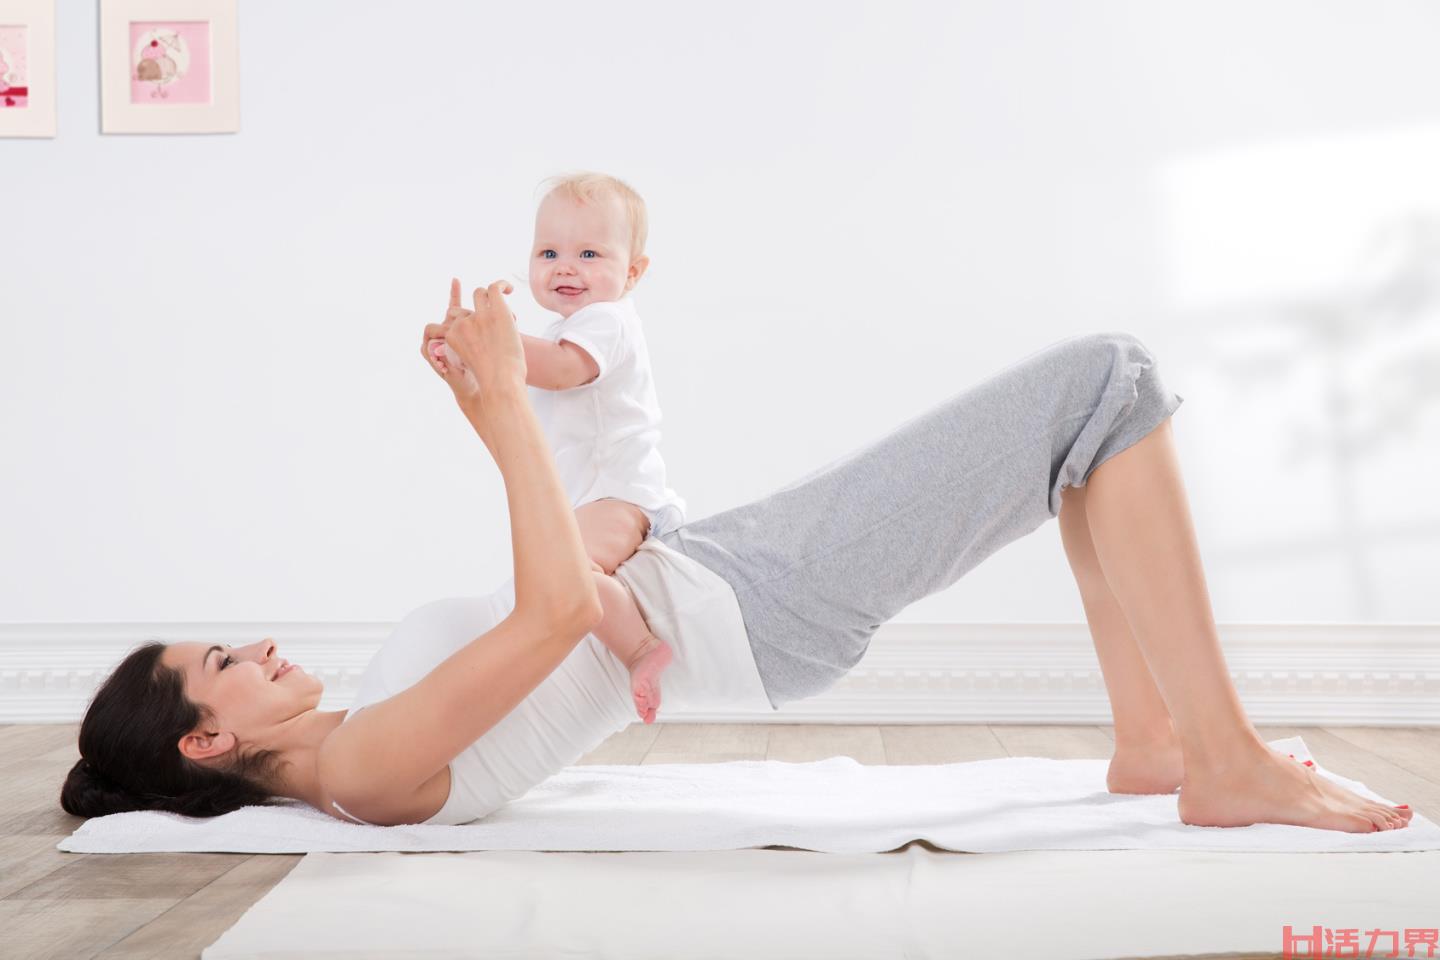 产后多久练习瑜伽恢复身材比较好？